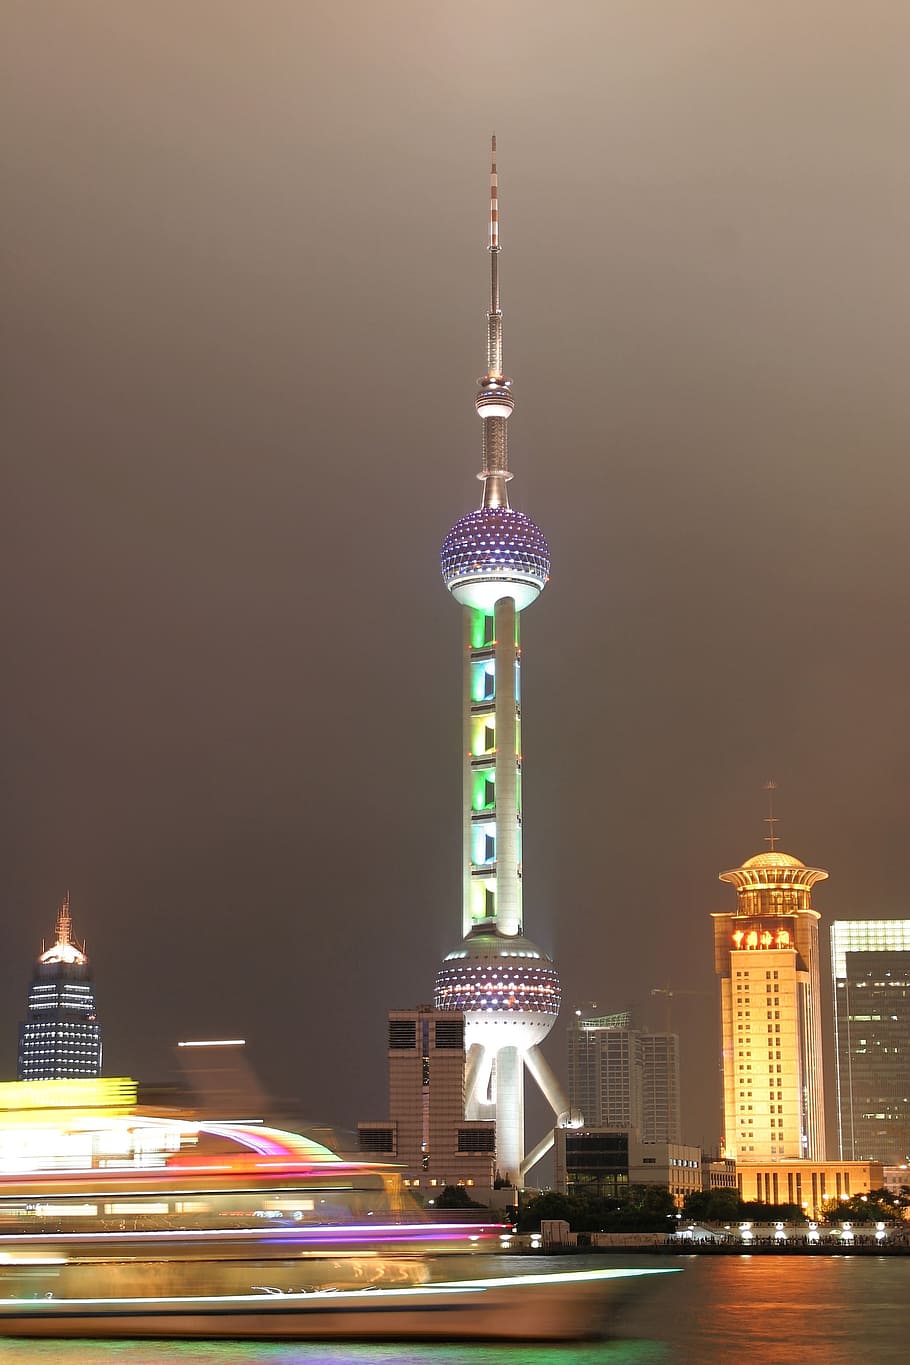 xangai, china, governo federal, linha do horizonte, torre de tv, arquitetura, estrutura construída, exterior do edifício, iluminado, construção